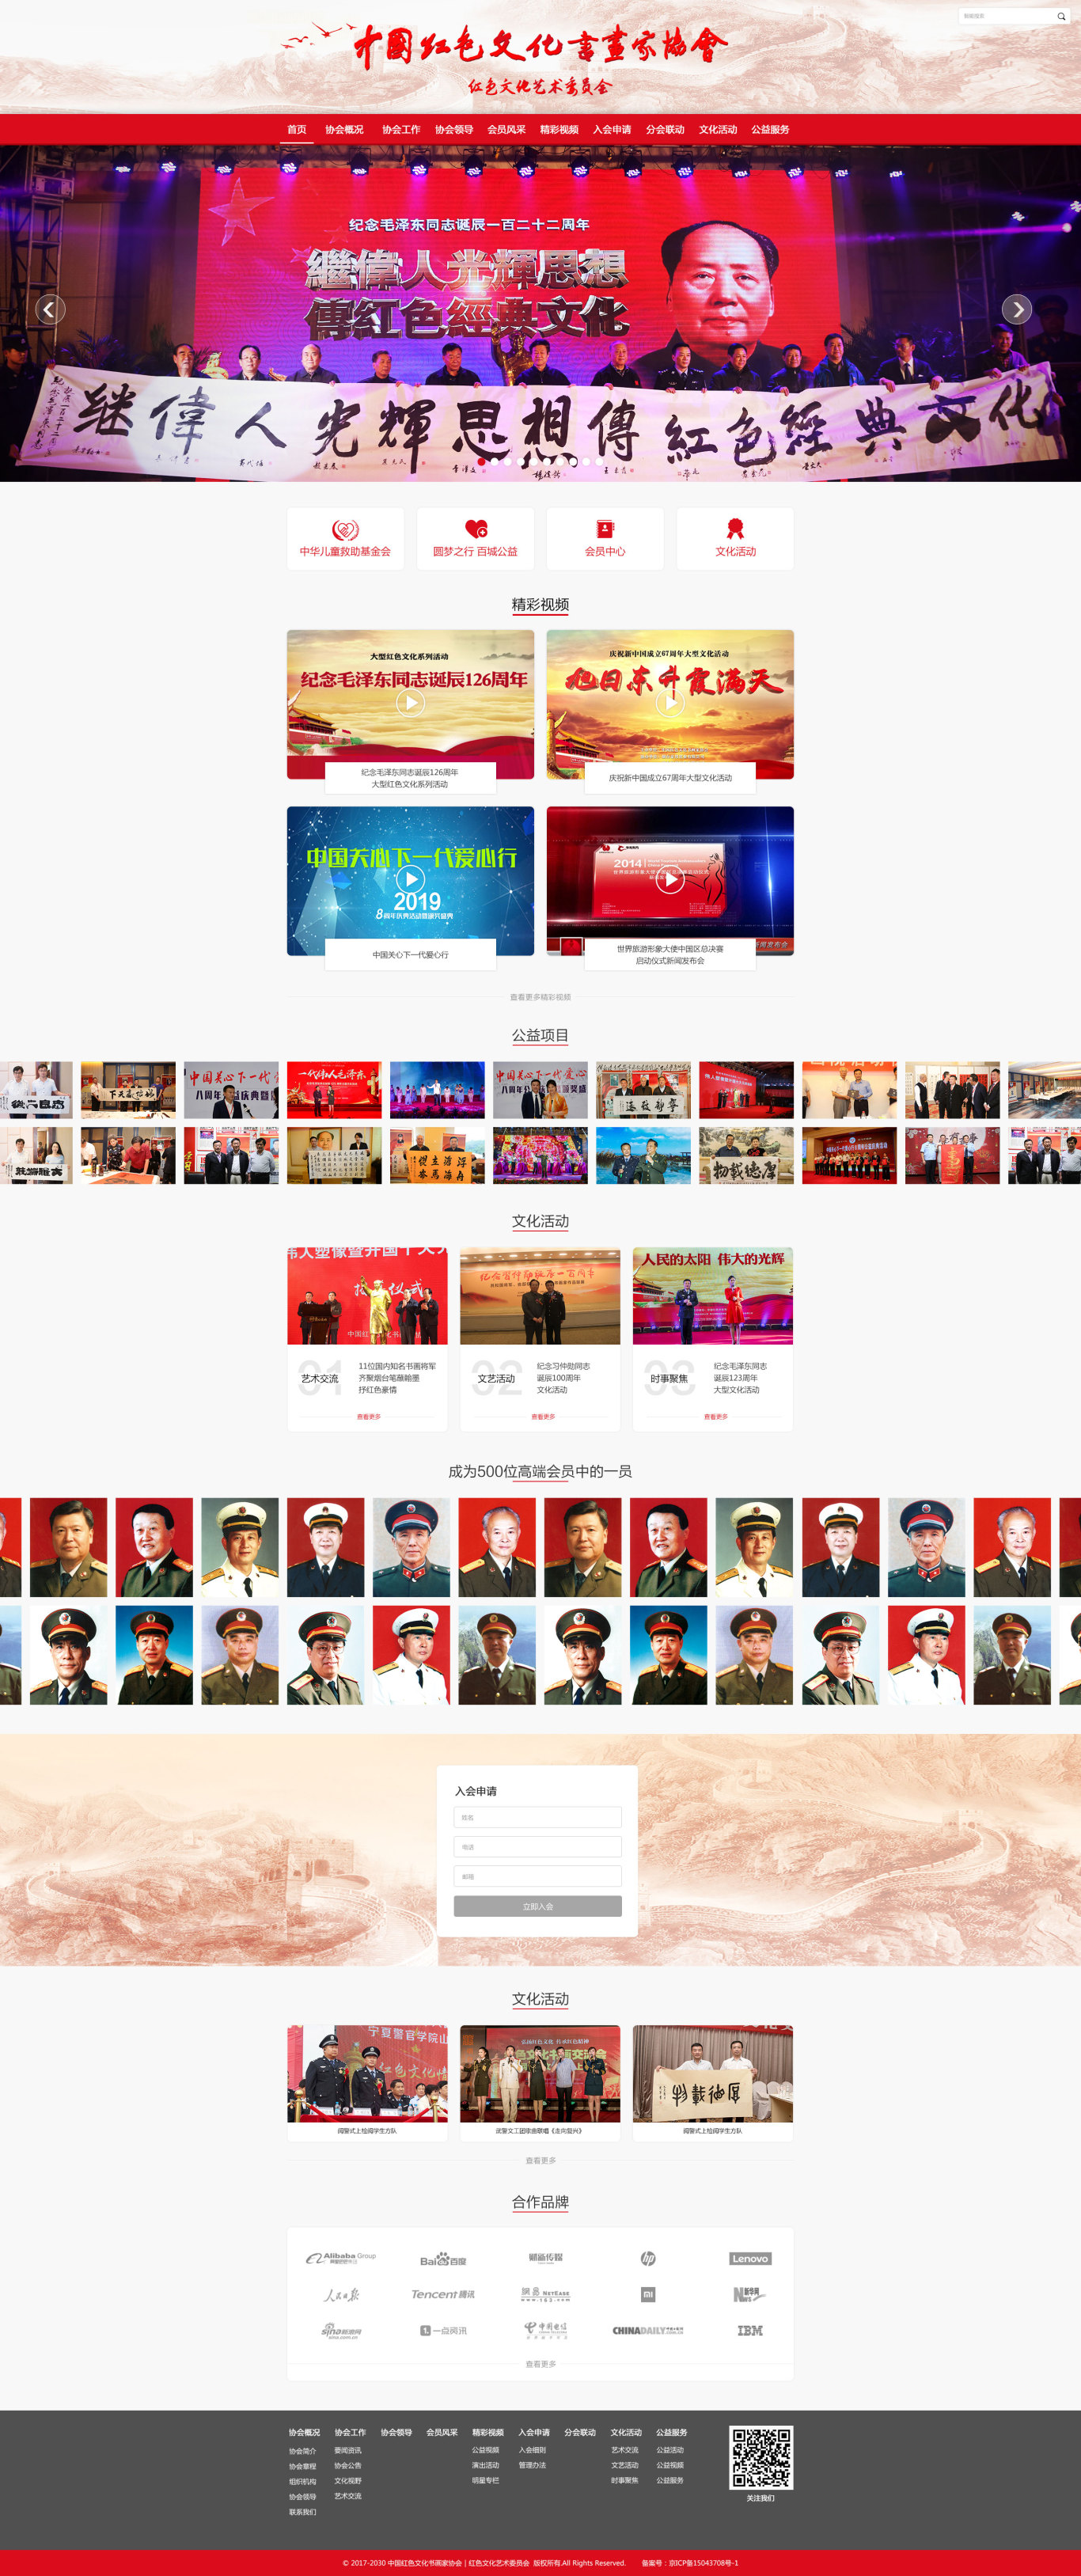 中國紅色文化書畫家協會網站設計圖13